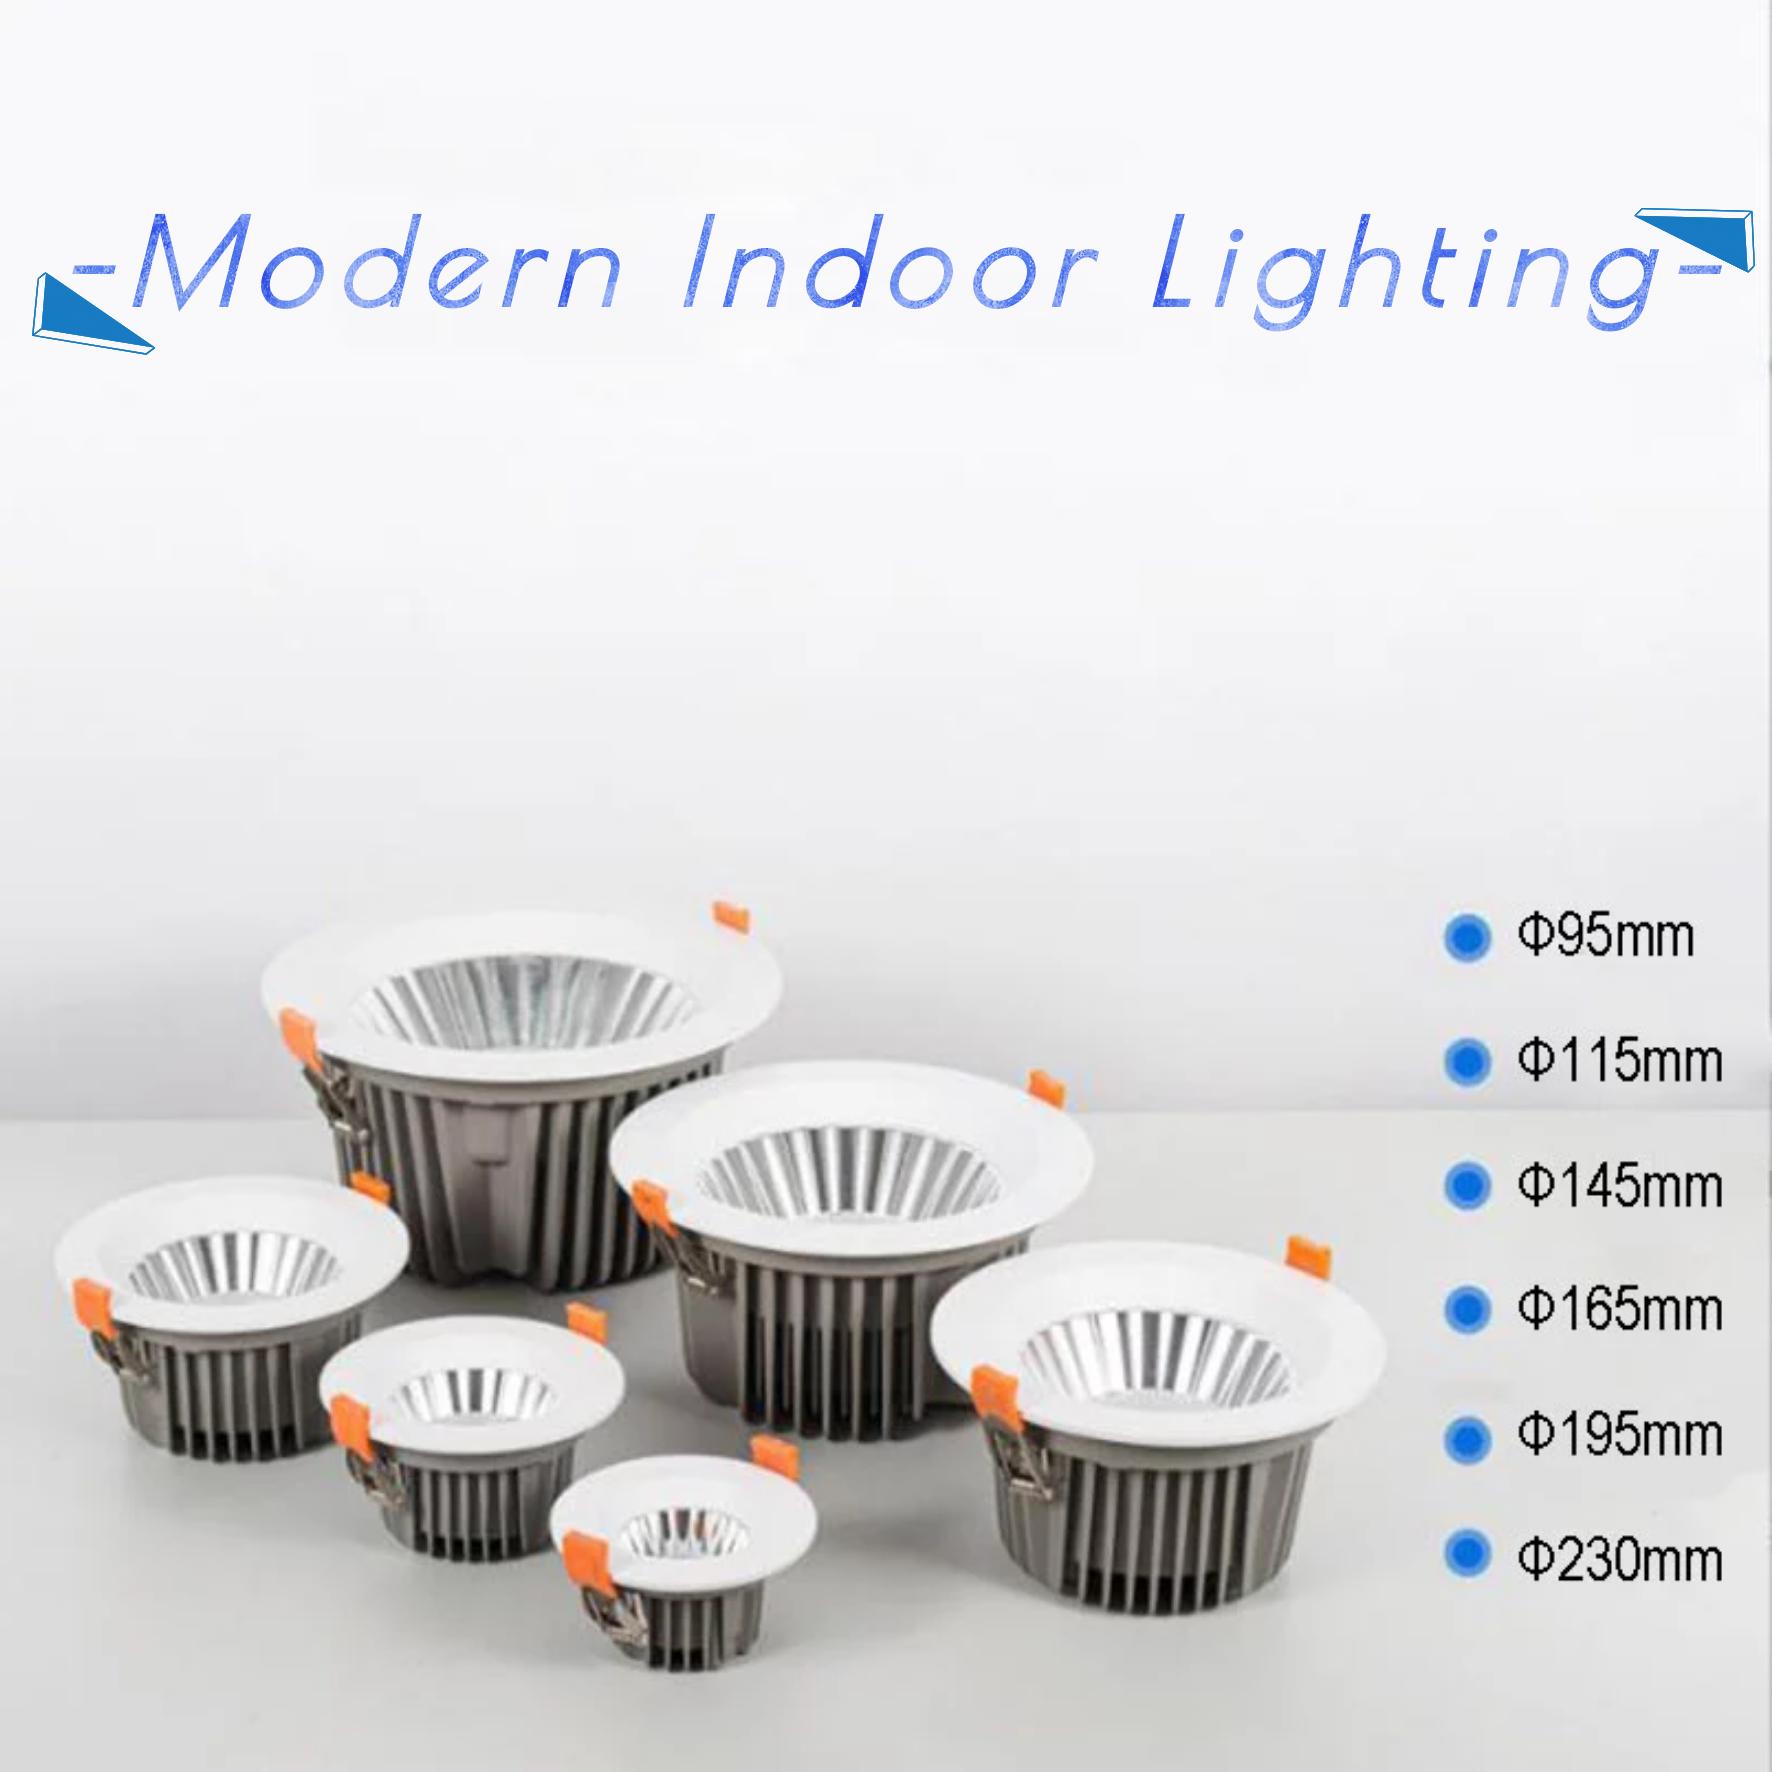 Modern Indoor Lighting